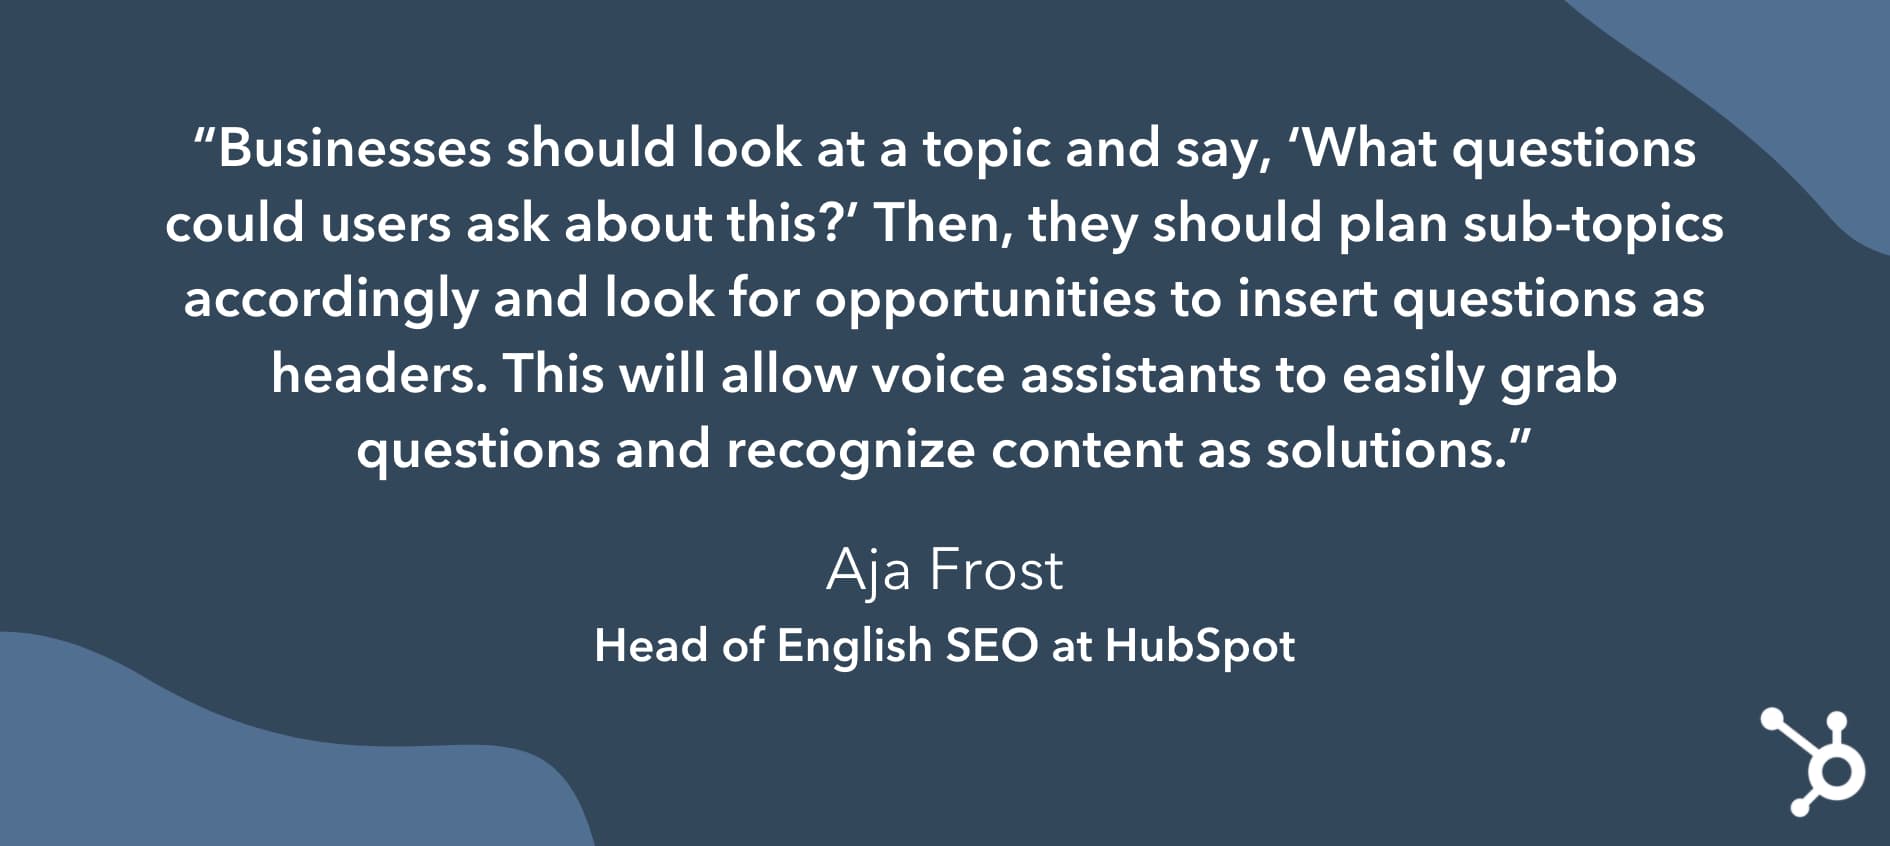 Cita de Aja Frost que dice que las empresas deben predecir qué preguntas harán las audiencias de búsqueda sobre temas de su industria